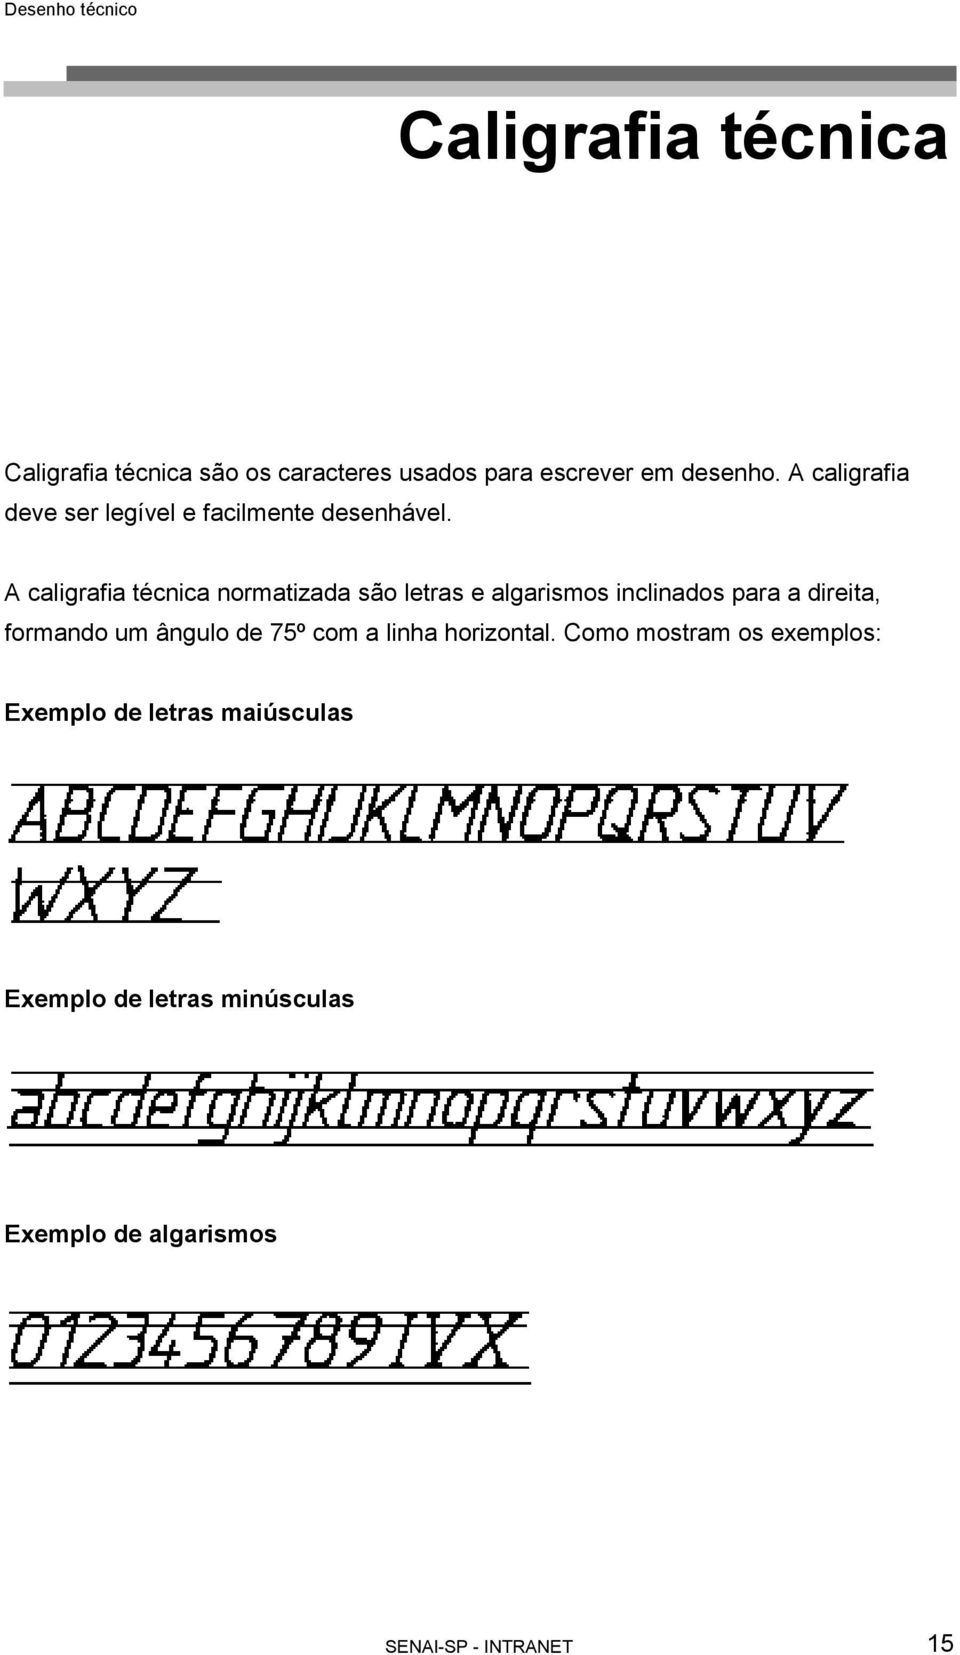 A caligrafia técnica normatizada são letras e algarismos inclinados para a direita, formando um